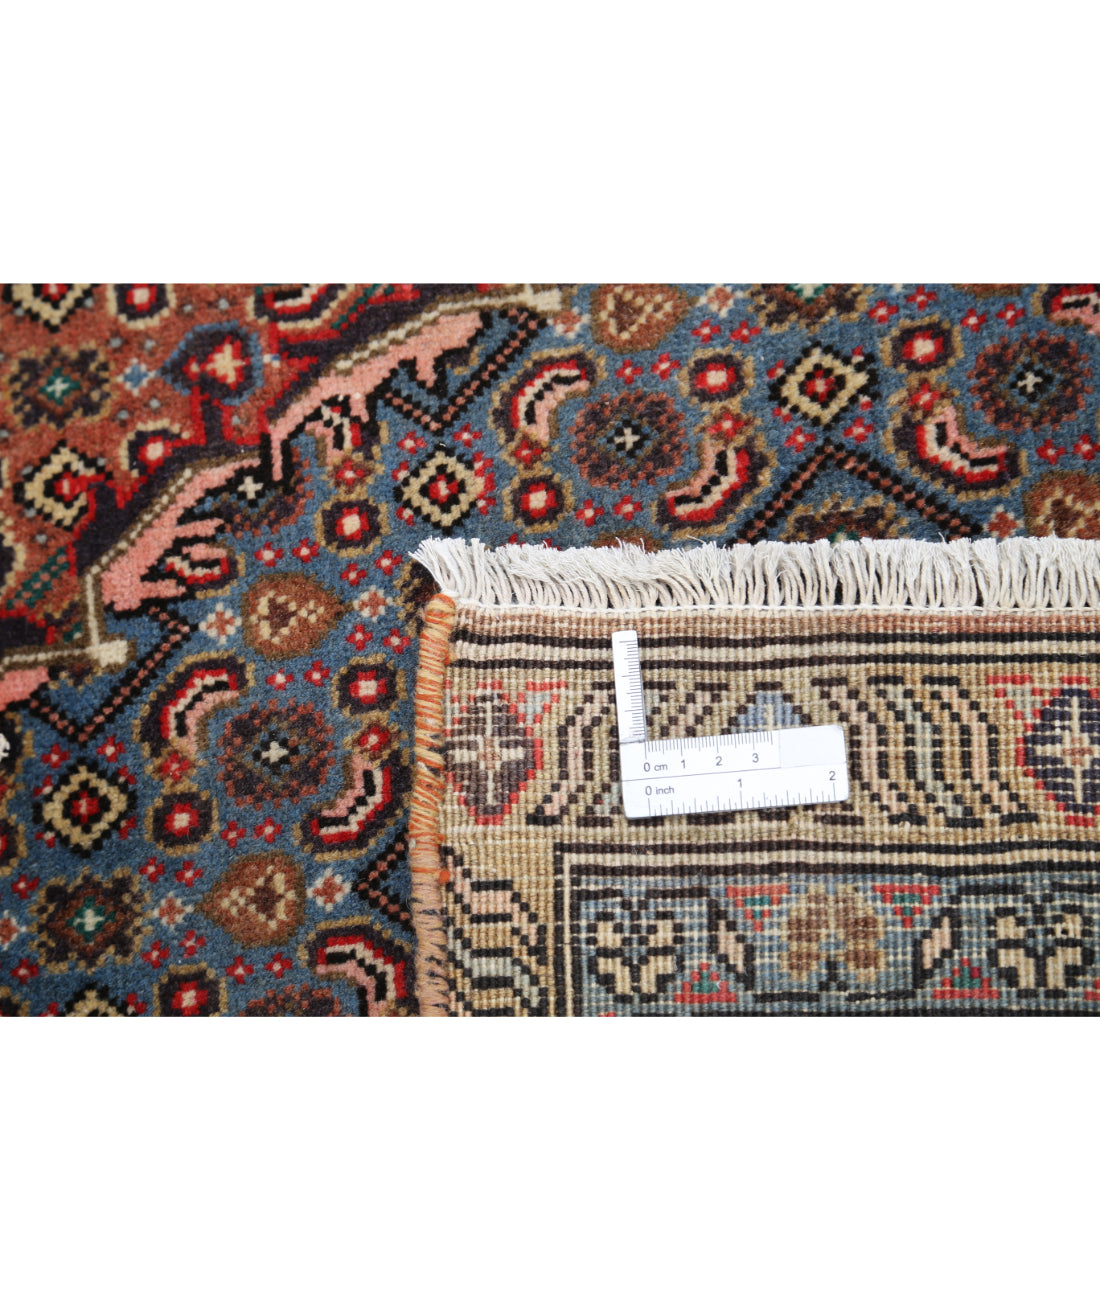 Hand Knotted Persian Bijar Wool Rug - 6'4'' x 7'9'' 6' 4" X 7' 9" (193 X 236) / Brown / Blue